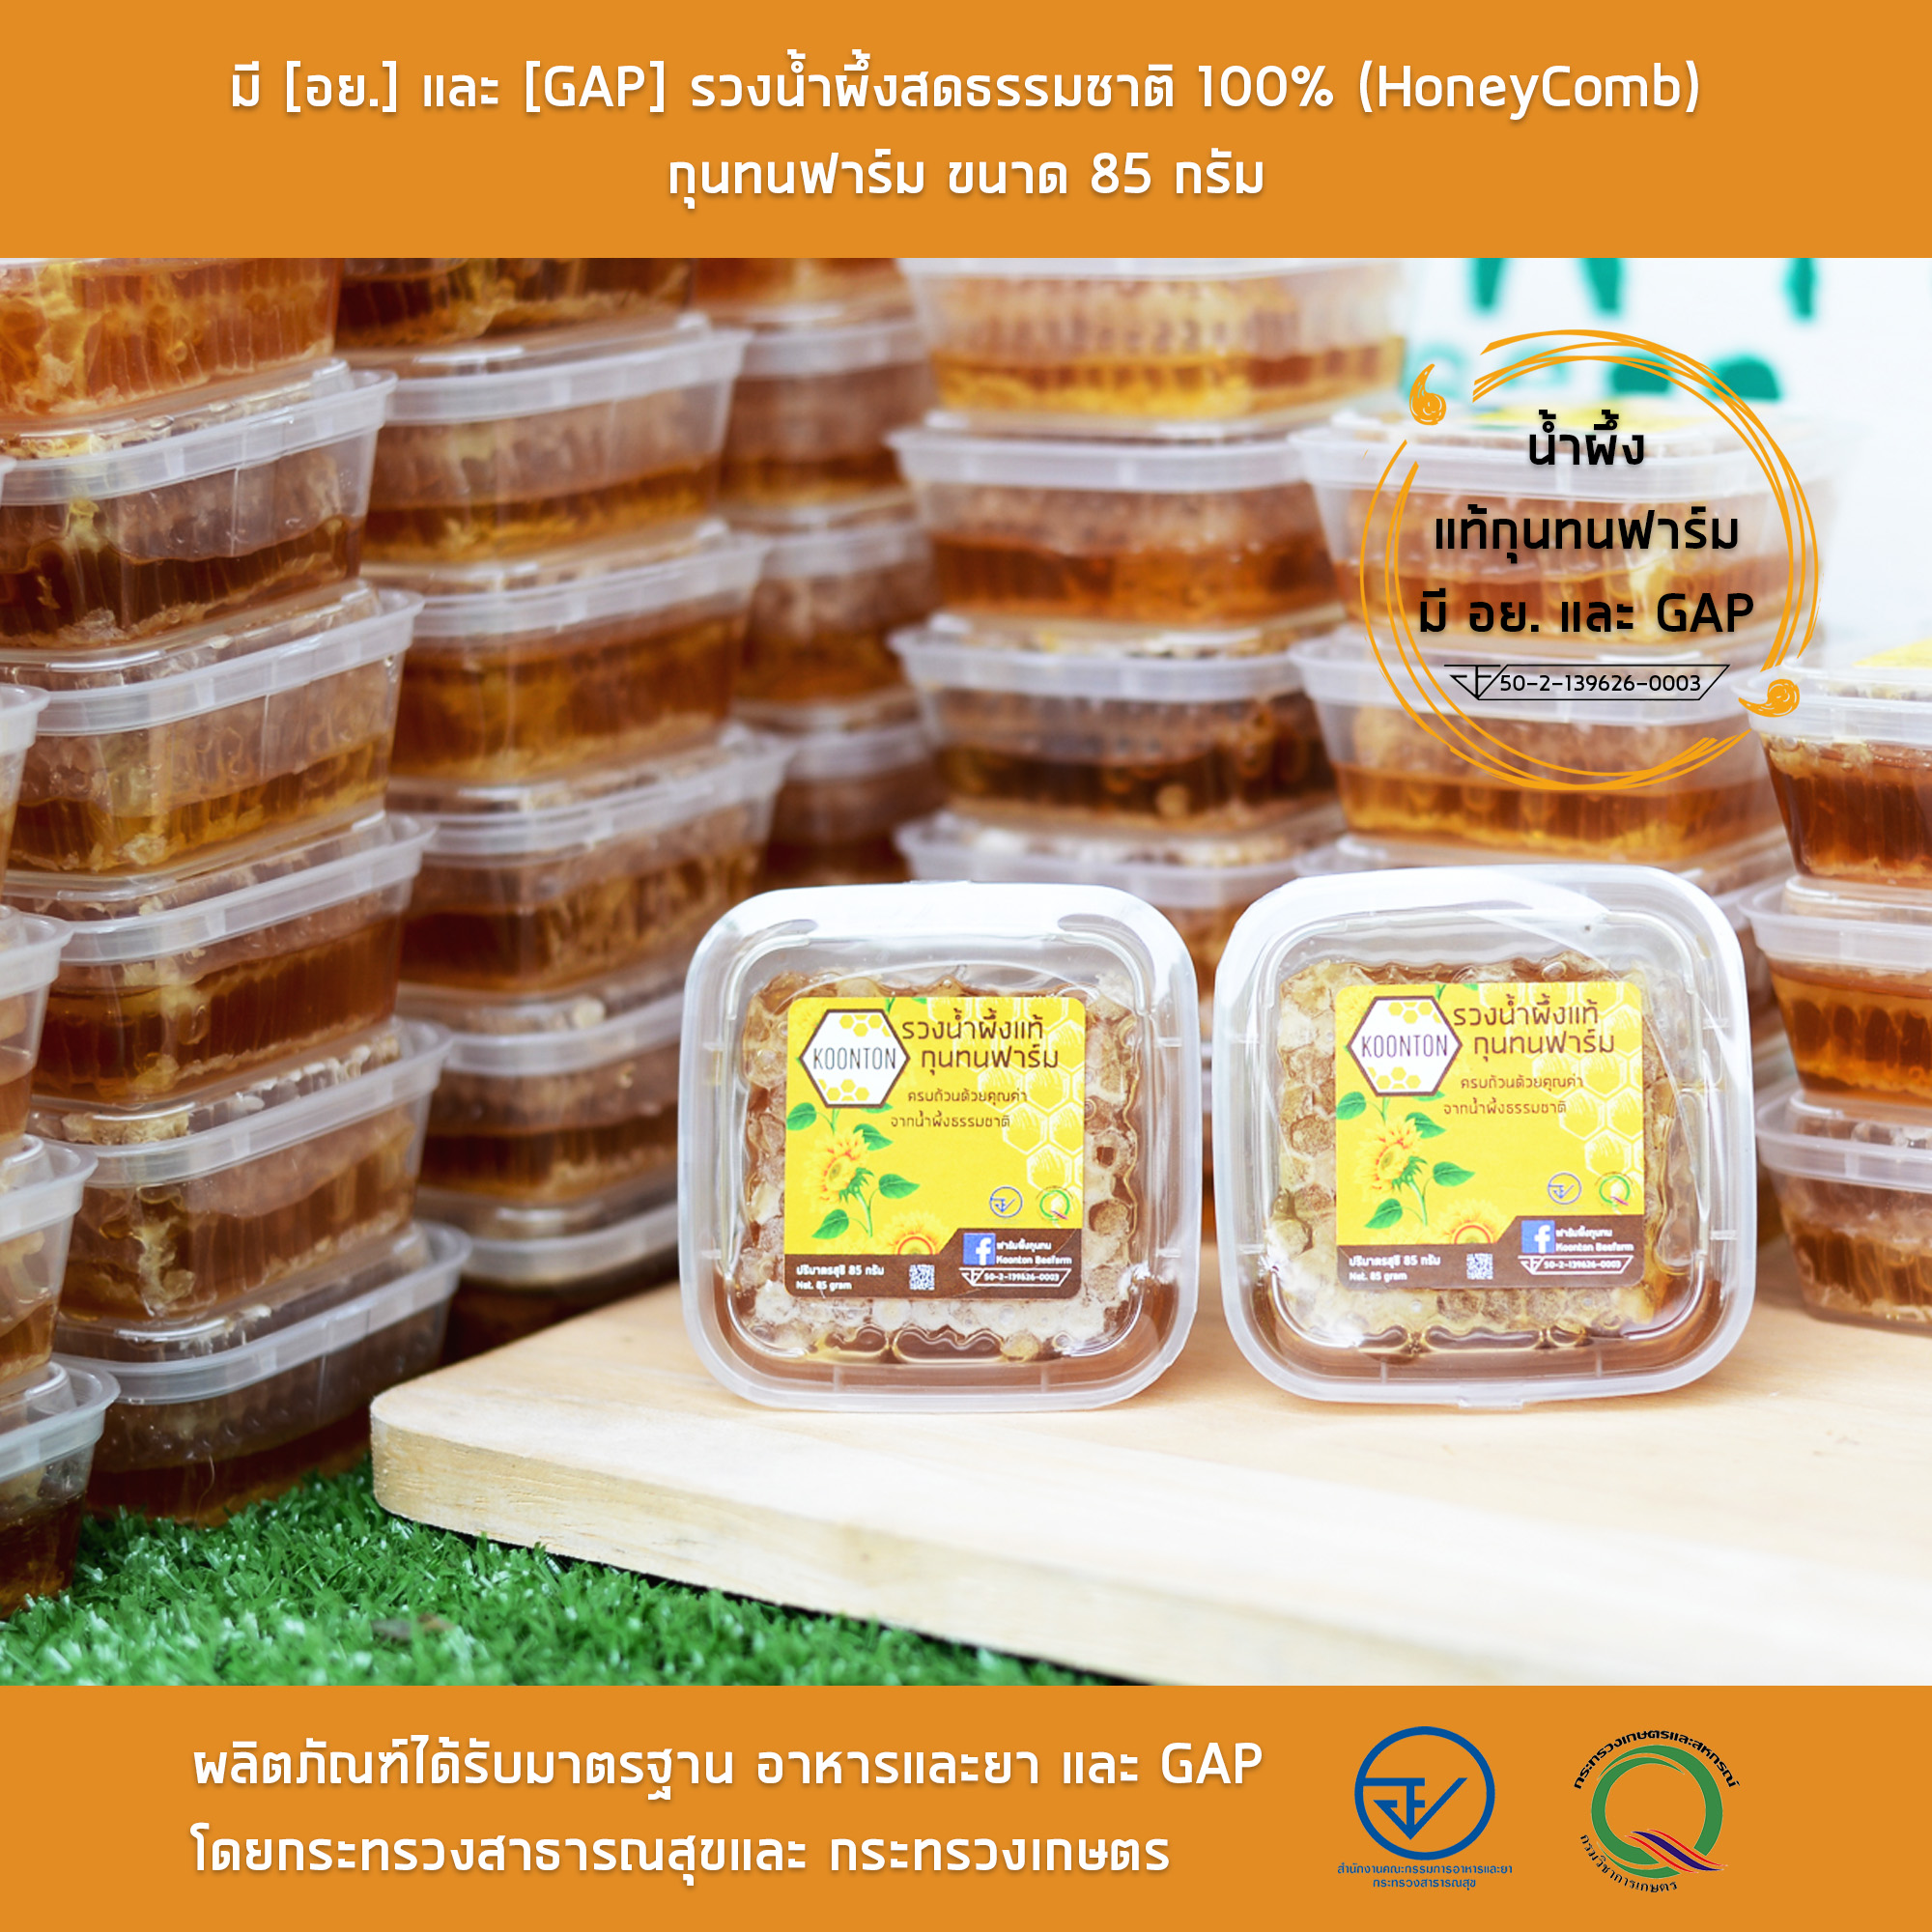 มี [อย.] และ [GAP] รวงน้ำผึ้งสดธรรมชาติ 100% (HoneyComb) กุนทนฟาร์ม ขนาด 85 กรัม